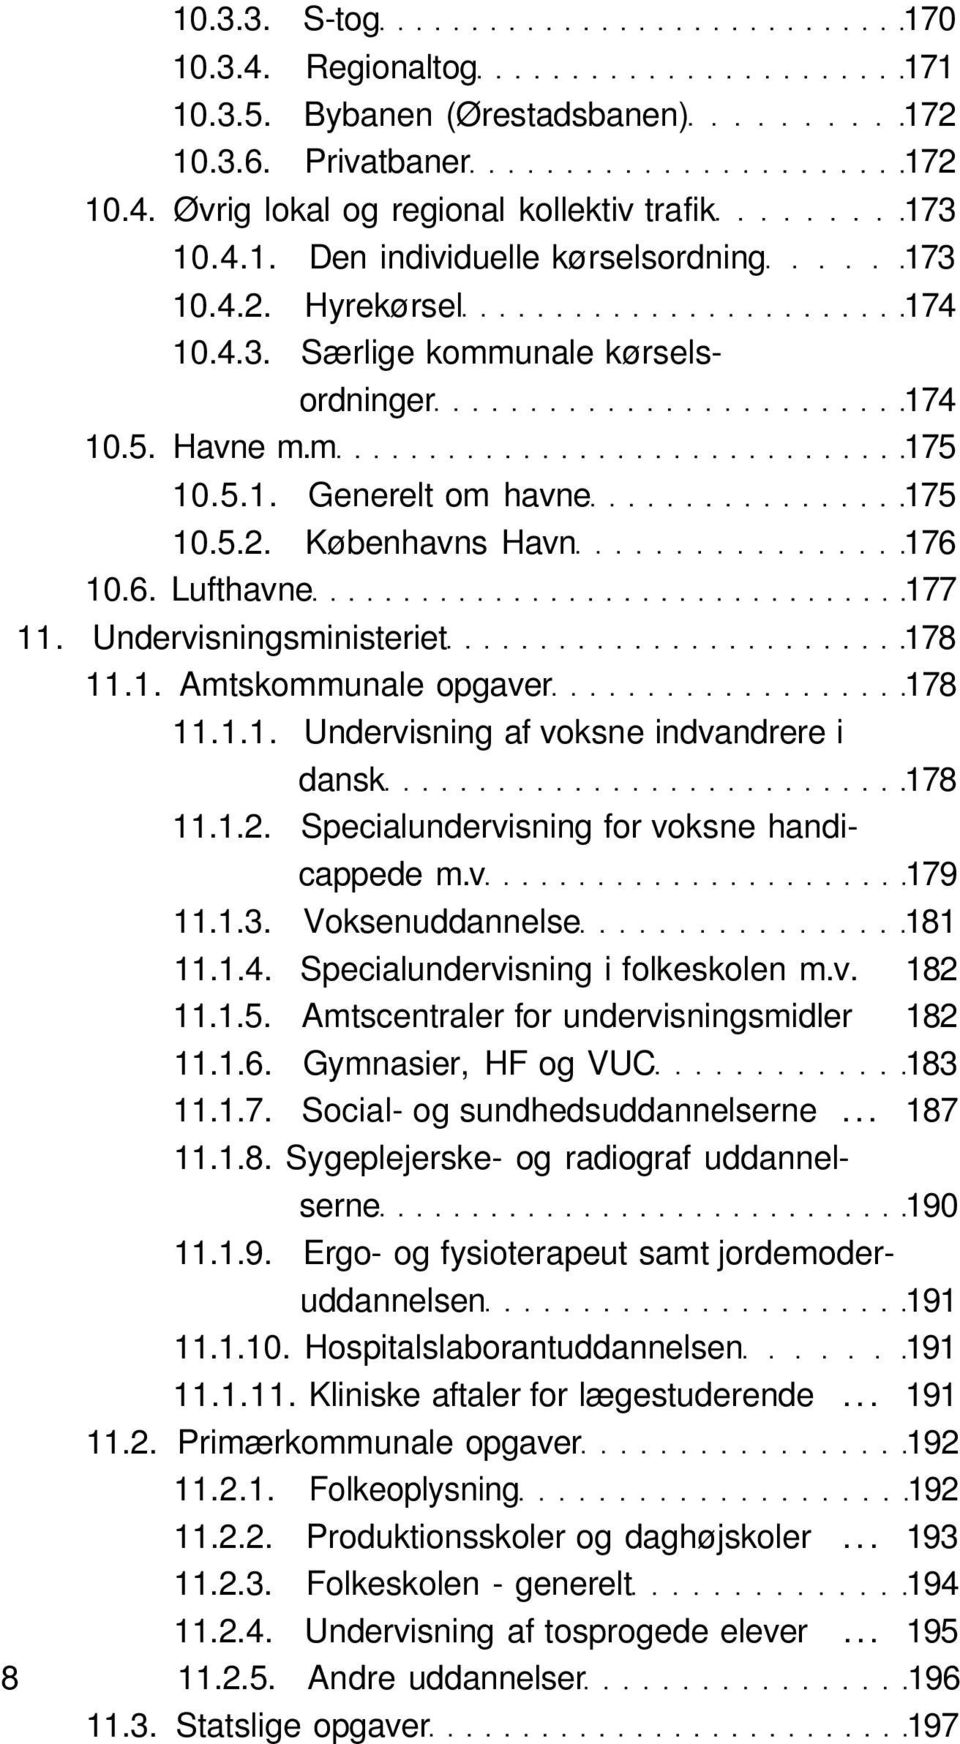 Undervisningsministeriet 178 11.1. Amtskommunale opgaver 178 11.1.1. Undervisning af voksne indvandrere i dansk 178 11.1.2. Specialundervisning for voksne handicappede m.v 179 11.1.3.